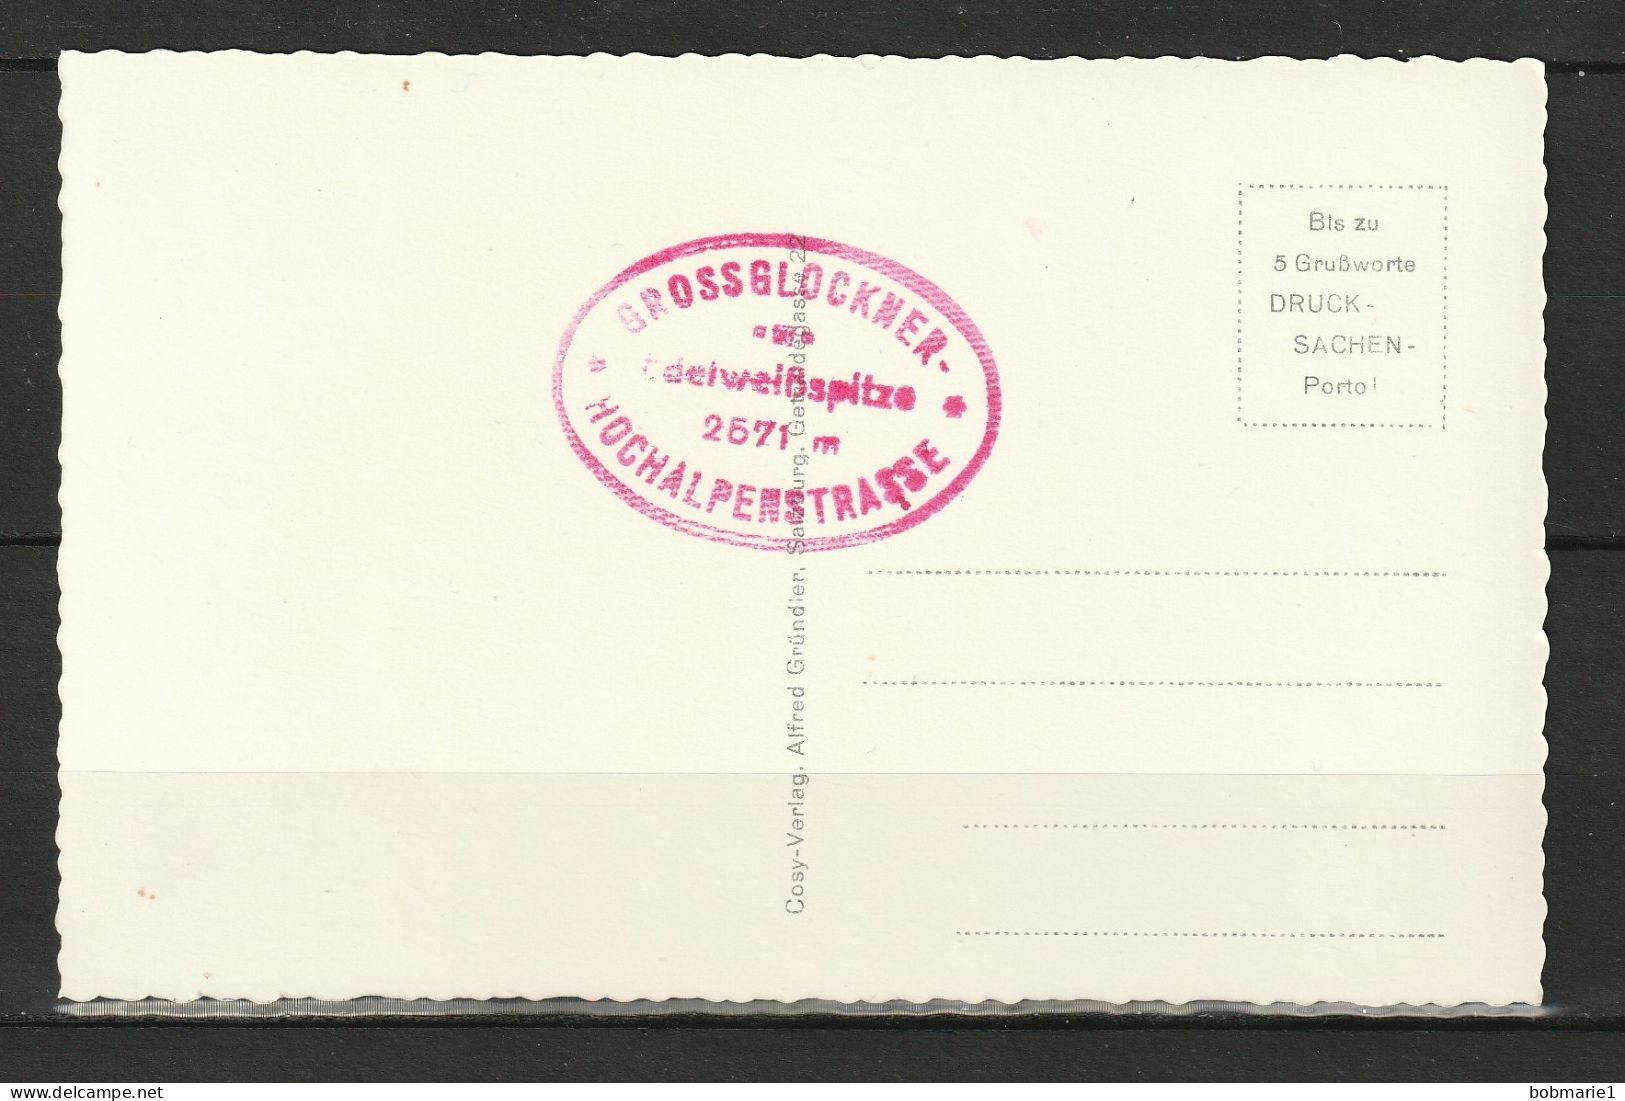 Carte Postale Autriche Grossglockner Hochalpenstabe Edelweibhutte 2571m. Non Circulée, Noir Et Blanc, Coupe Dentelée - Colecciones Y Lotes